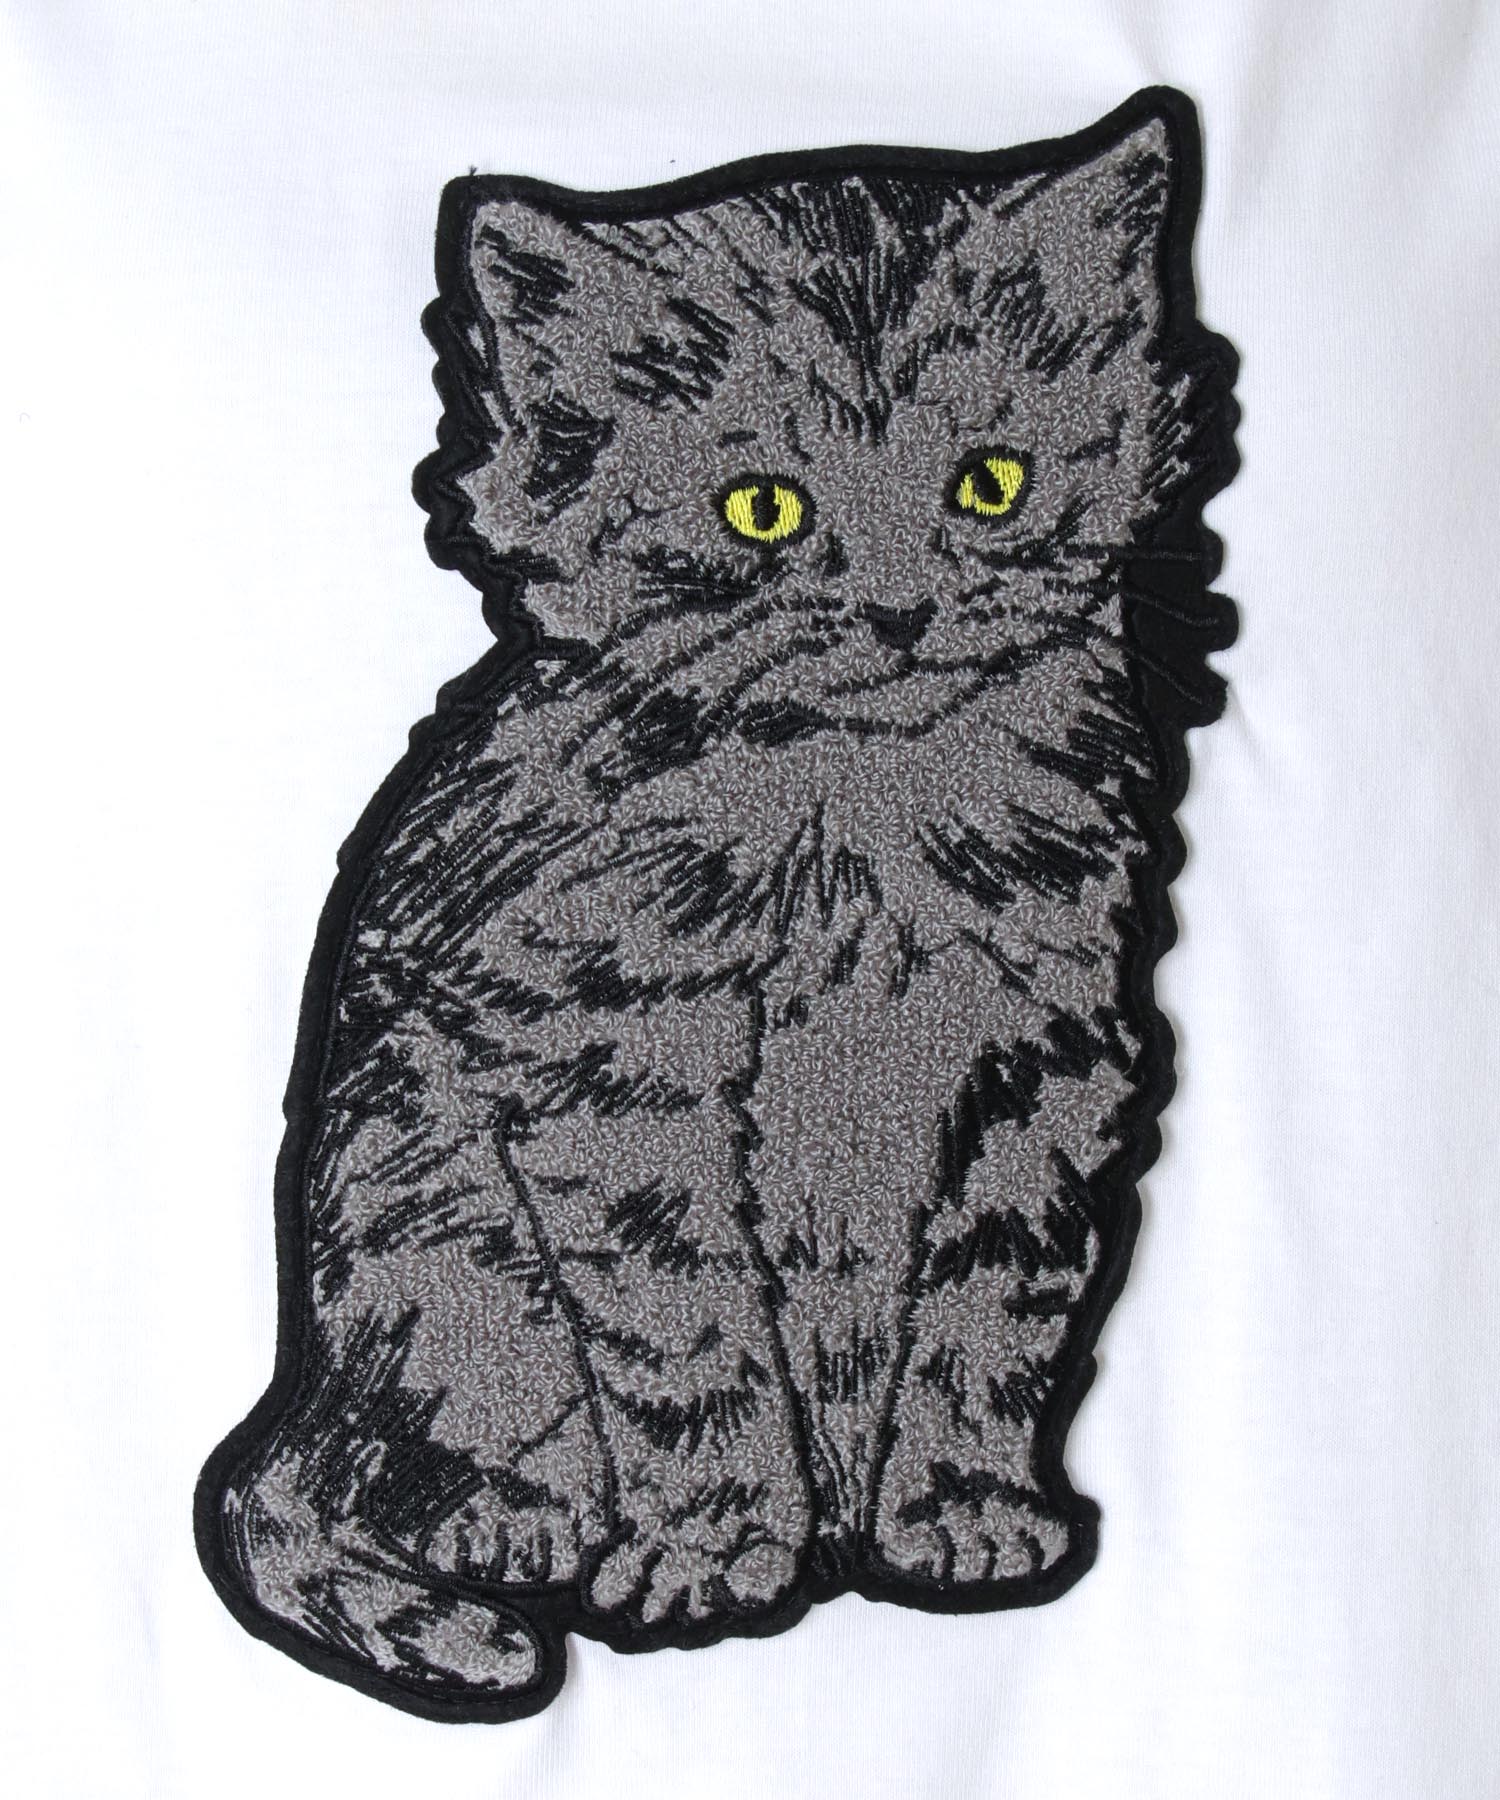 【一部店舗限定発売】SIMEON FARRAR / CAT PATCH T-shirt